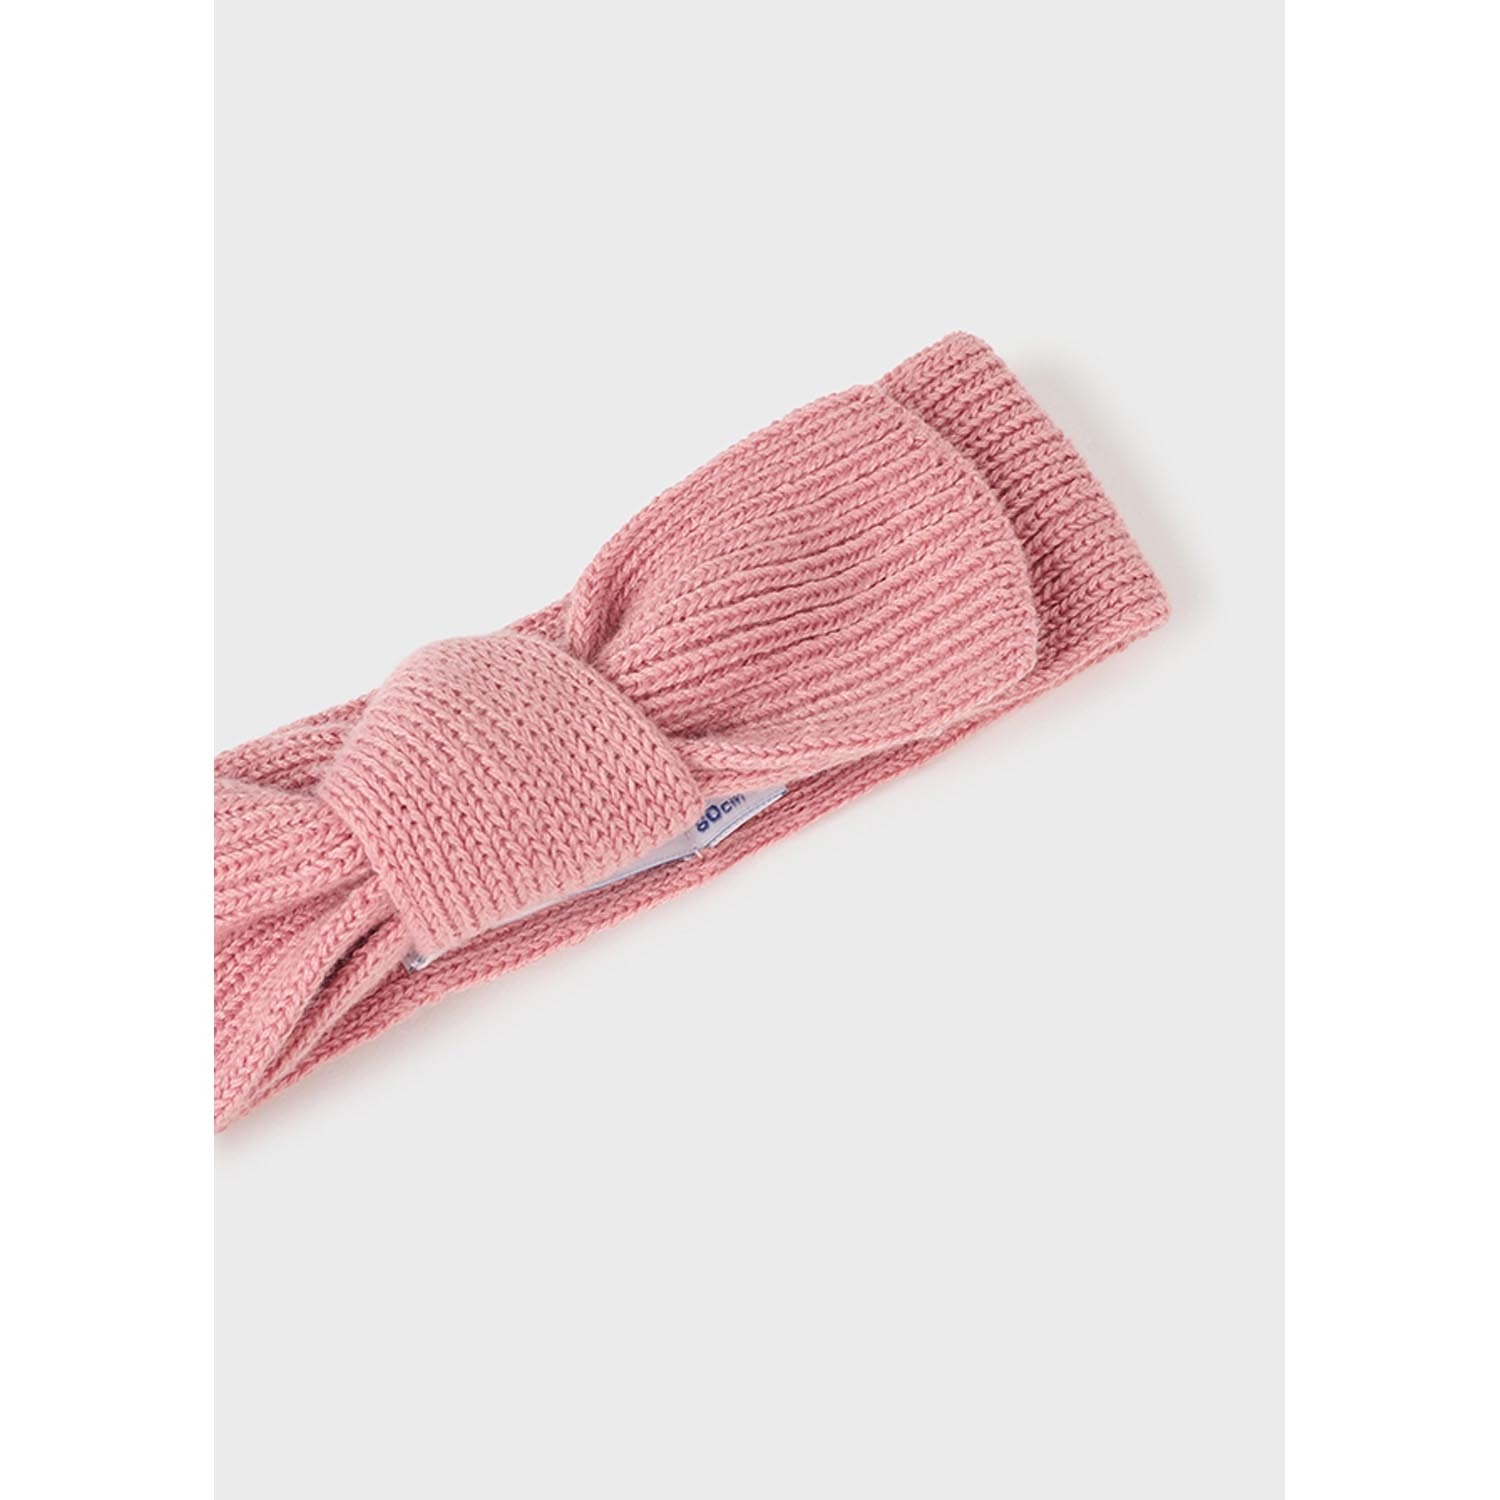 Mayoral Girls Headband Soft Knit Blush Size 24m | 10292 Pink